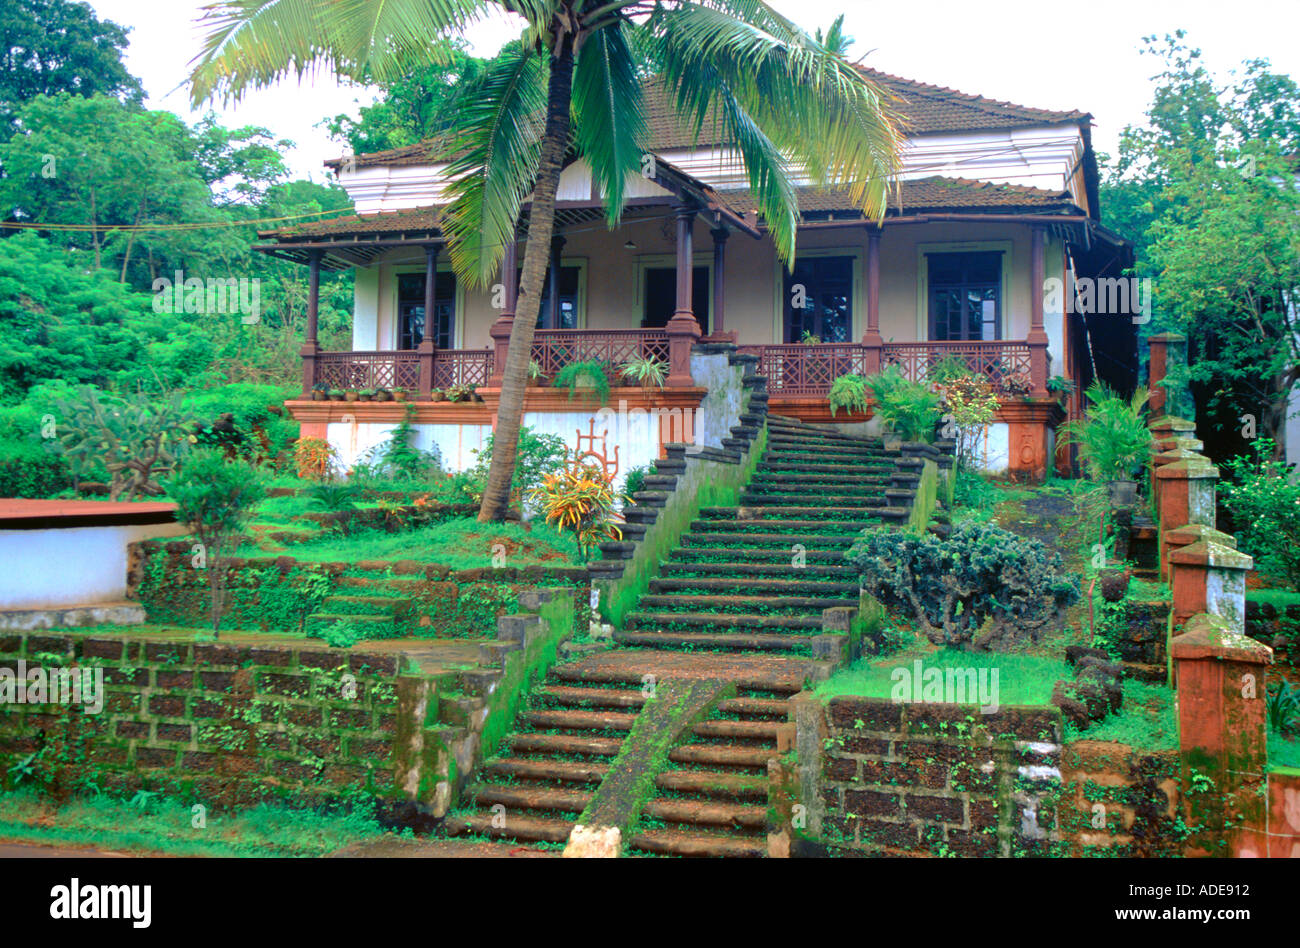 Grande cucina Goana imponente casa residenziale tipico di coloniale portoghese architettura domestica. Margao madgaon Salcete Goa in India Foto Stock